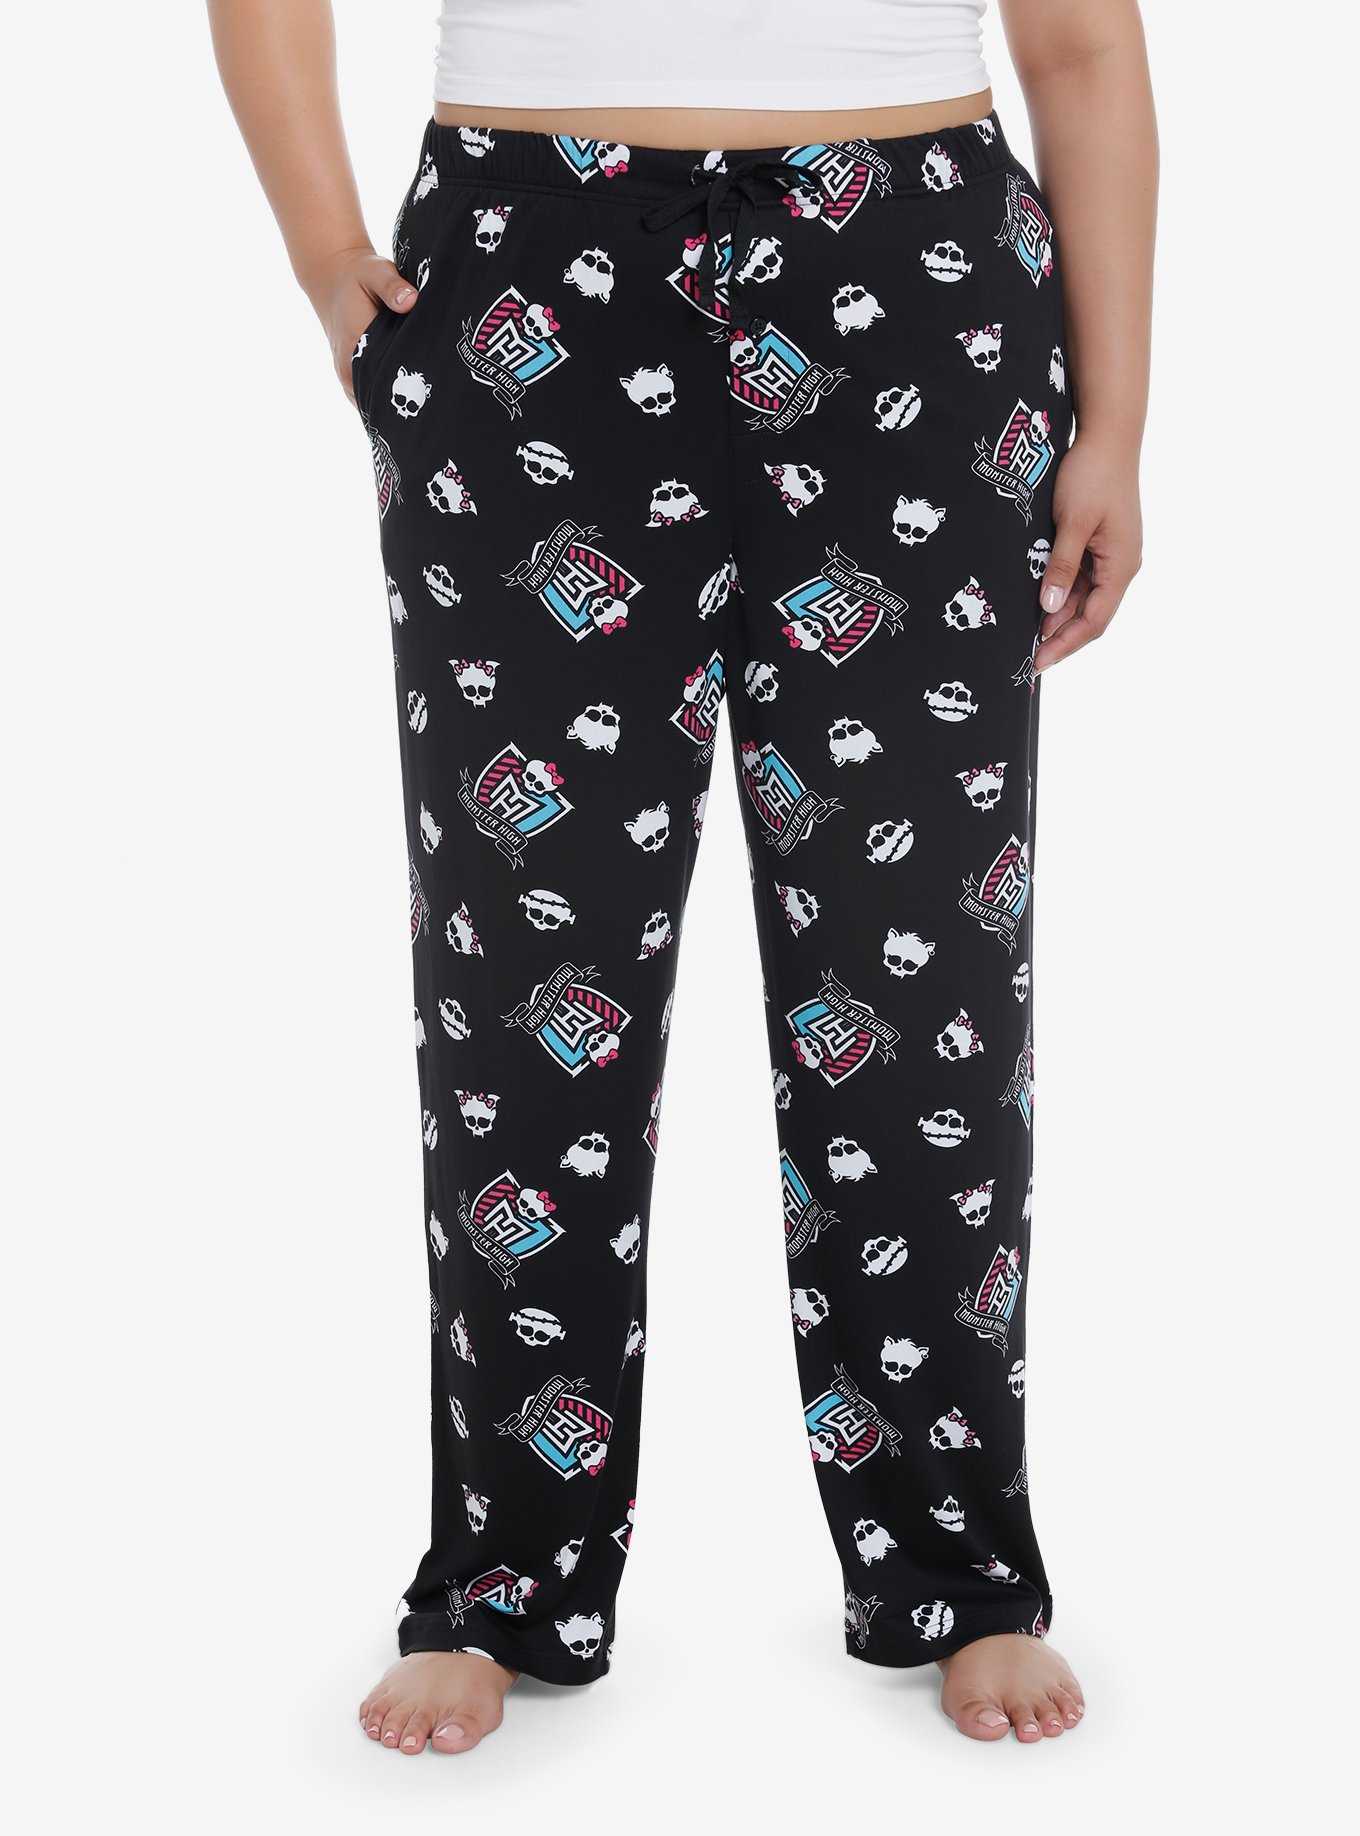 Dog Mom Pajamas 1X in Women's Cotton Pajamas